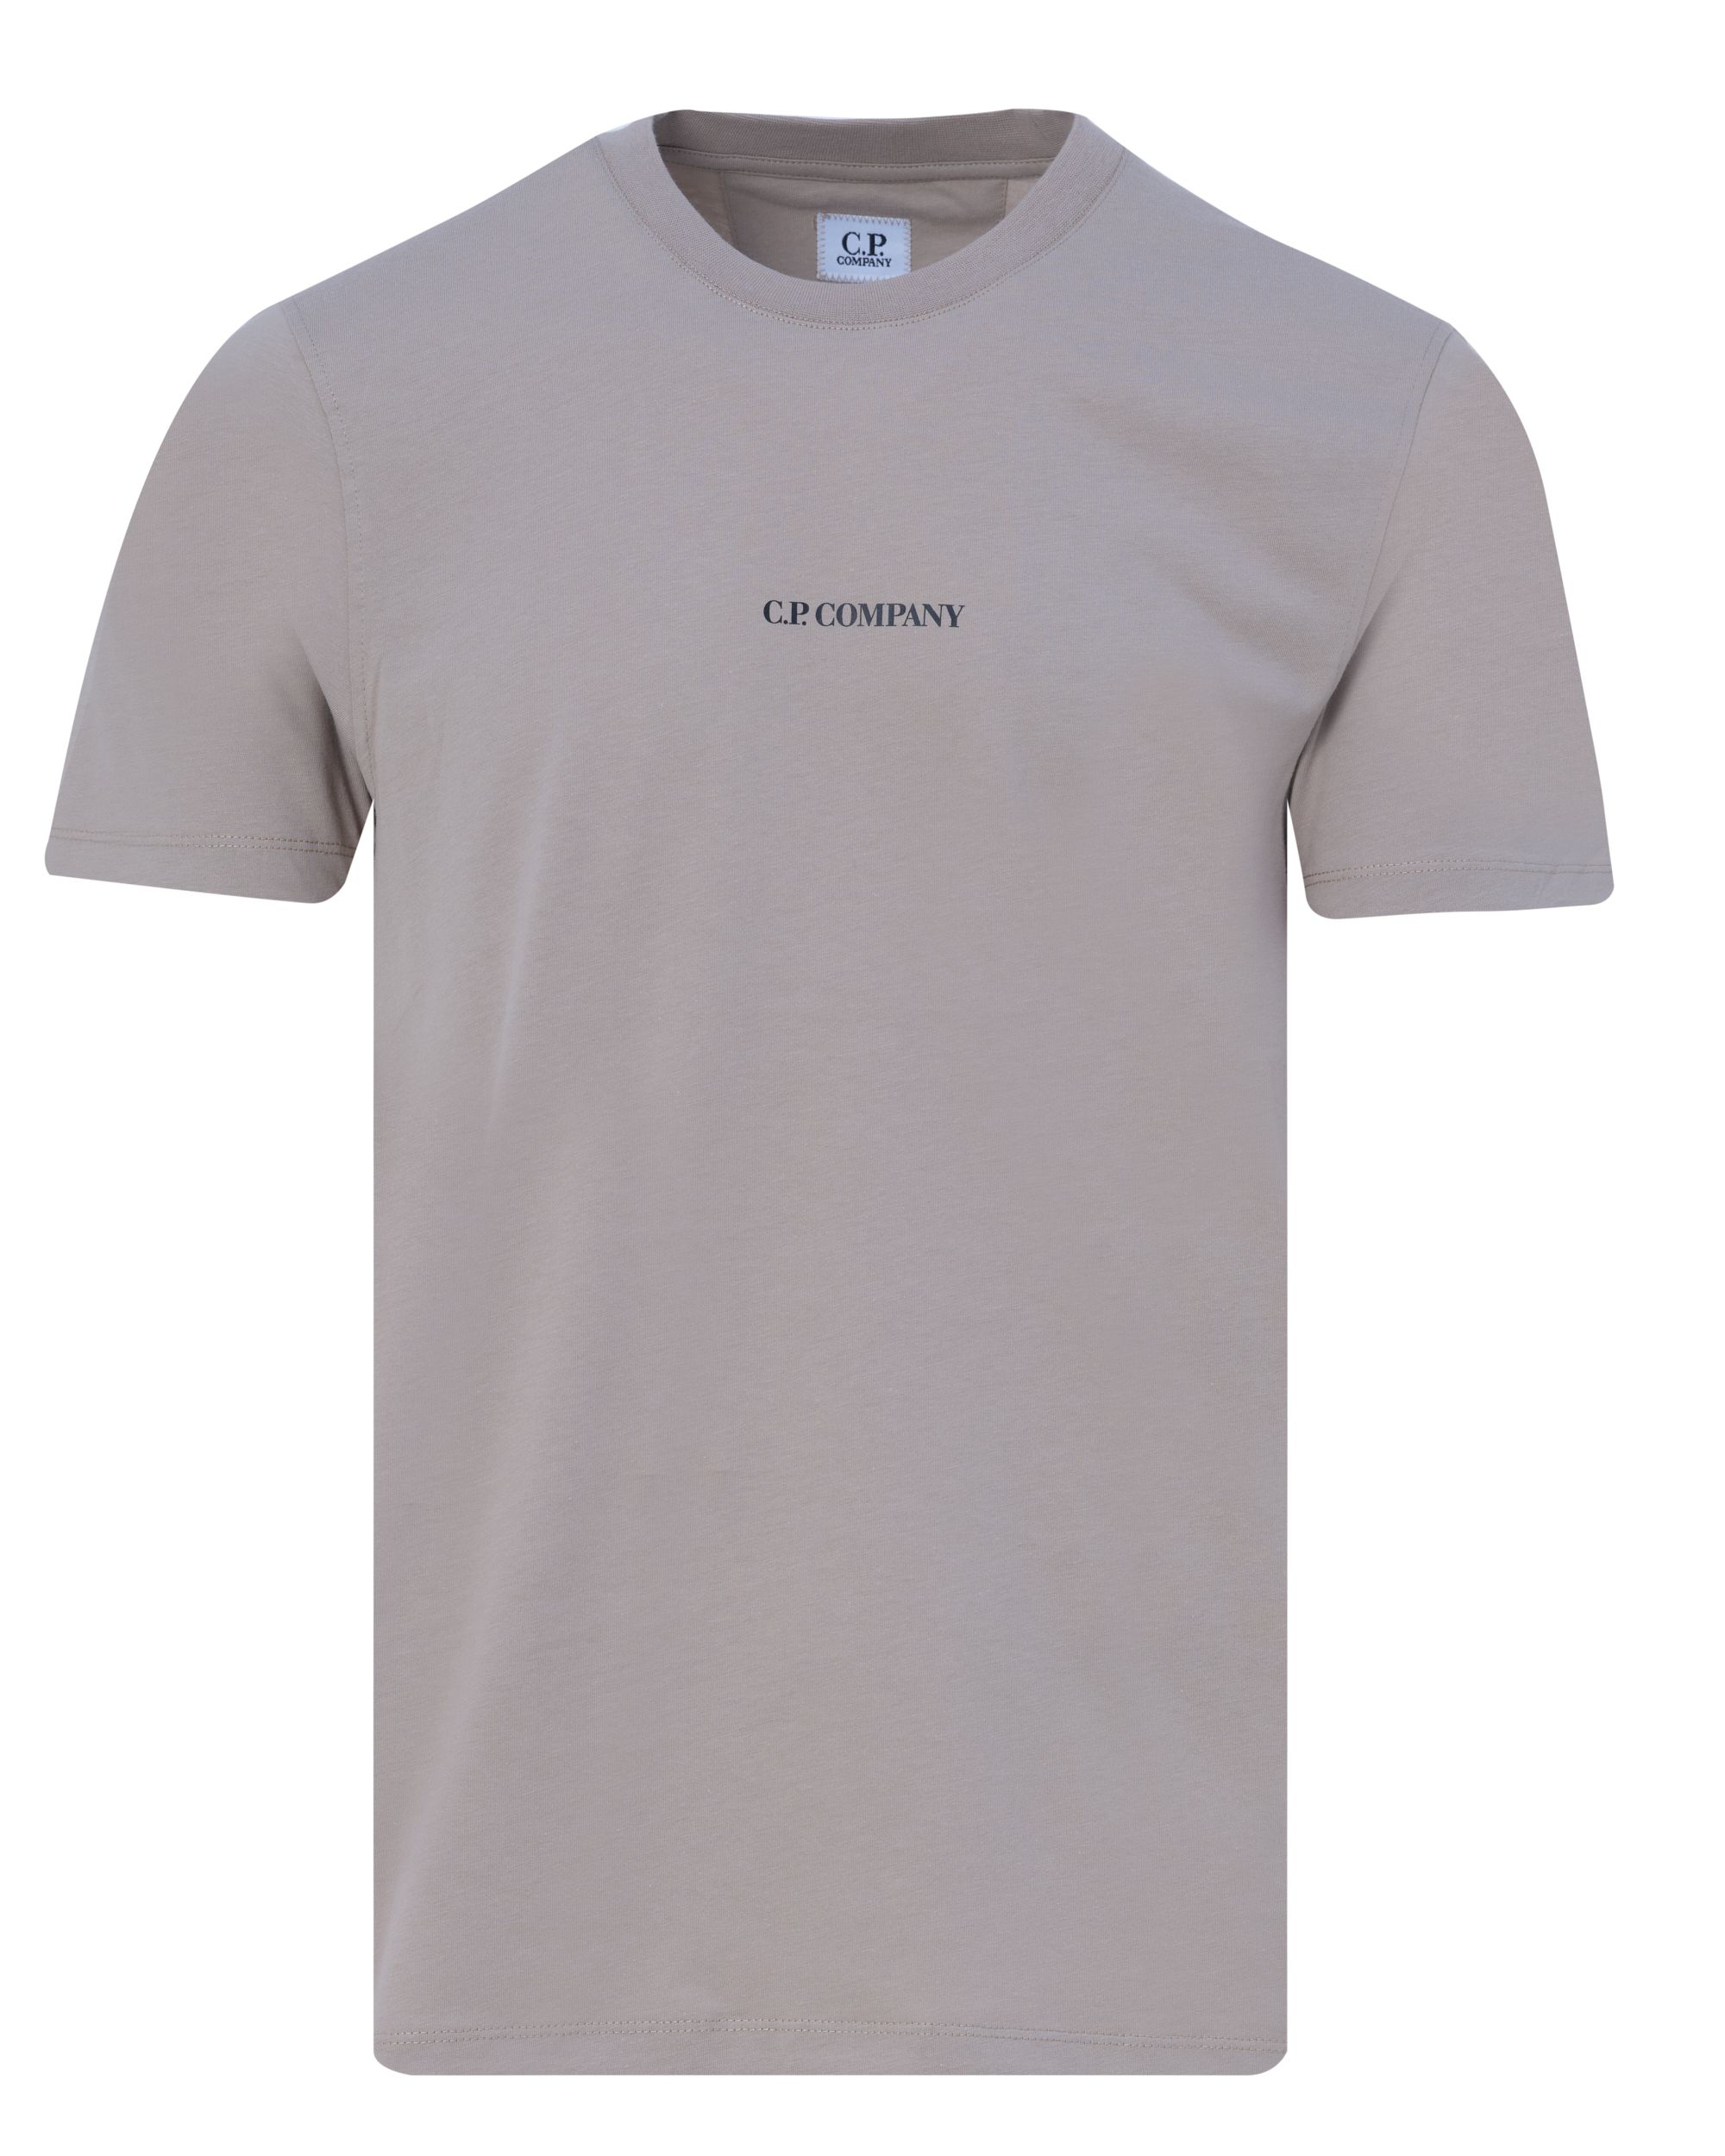 C.P Company T-shirt KM Khaki 082107-001-L